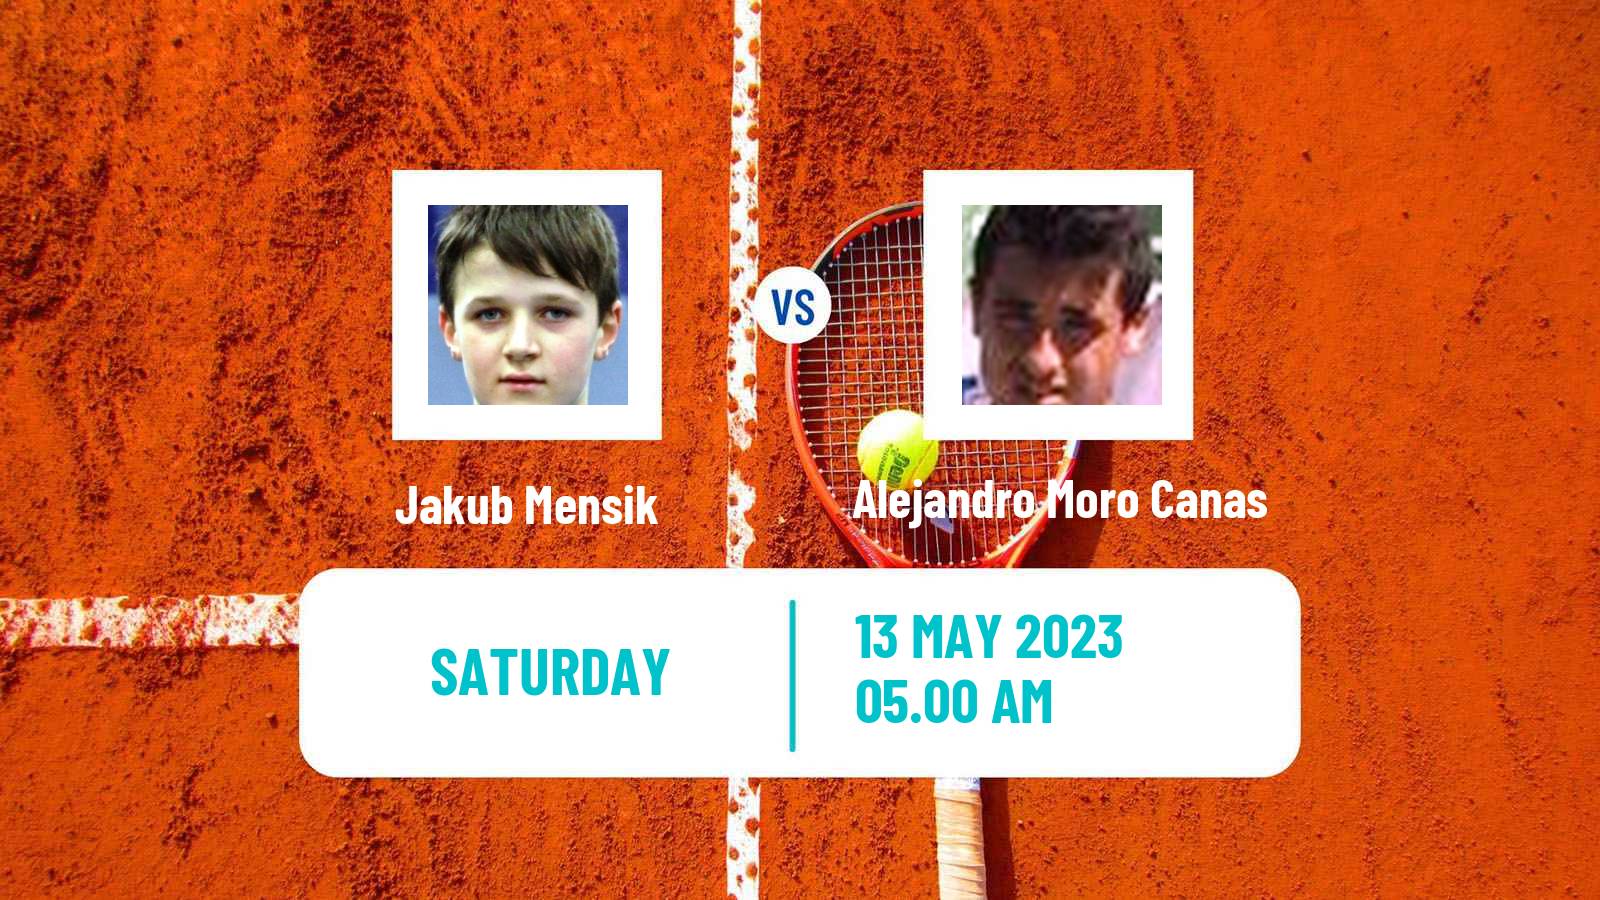 Tennis ATP Challenger Jakub Mensik - Alejandro Moro Canas